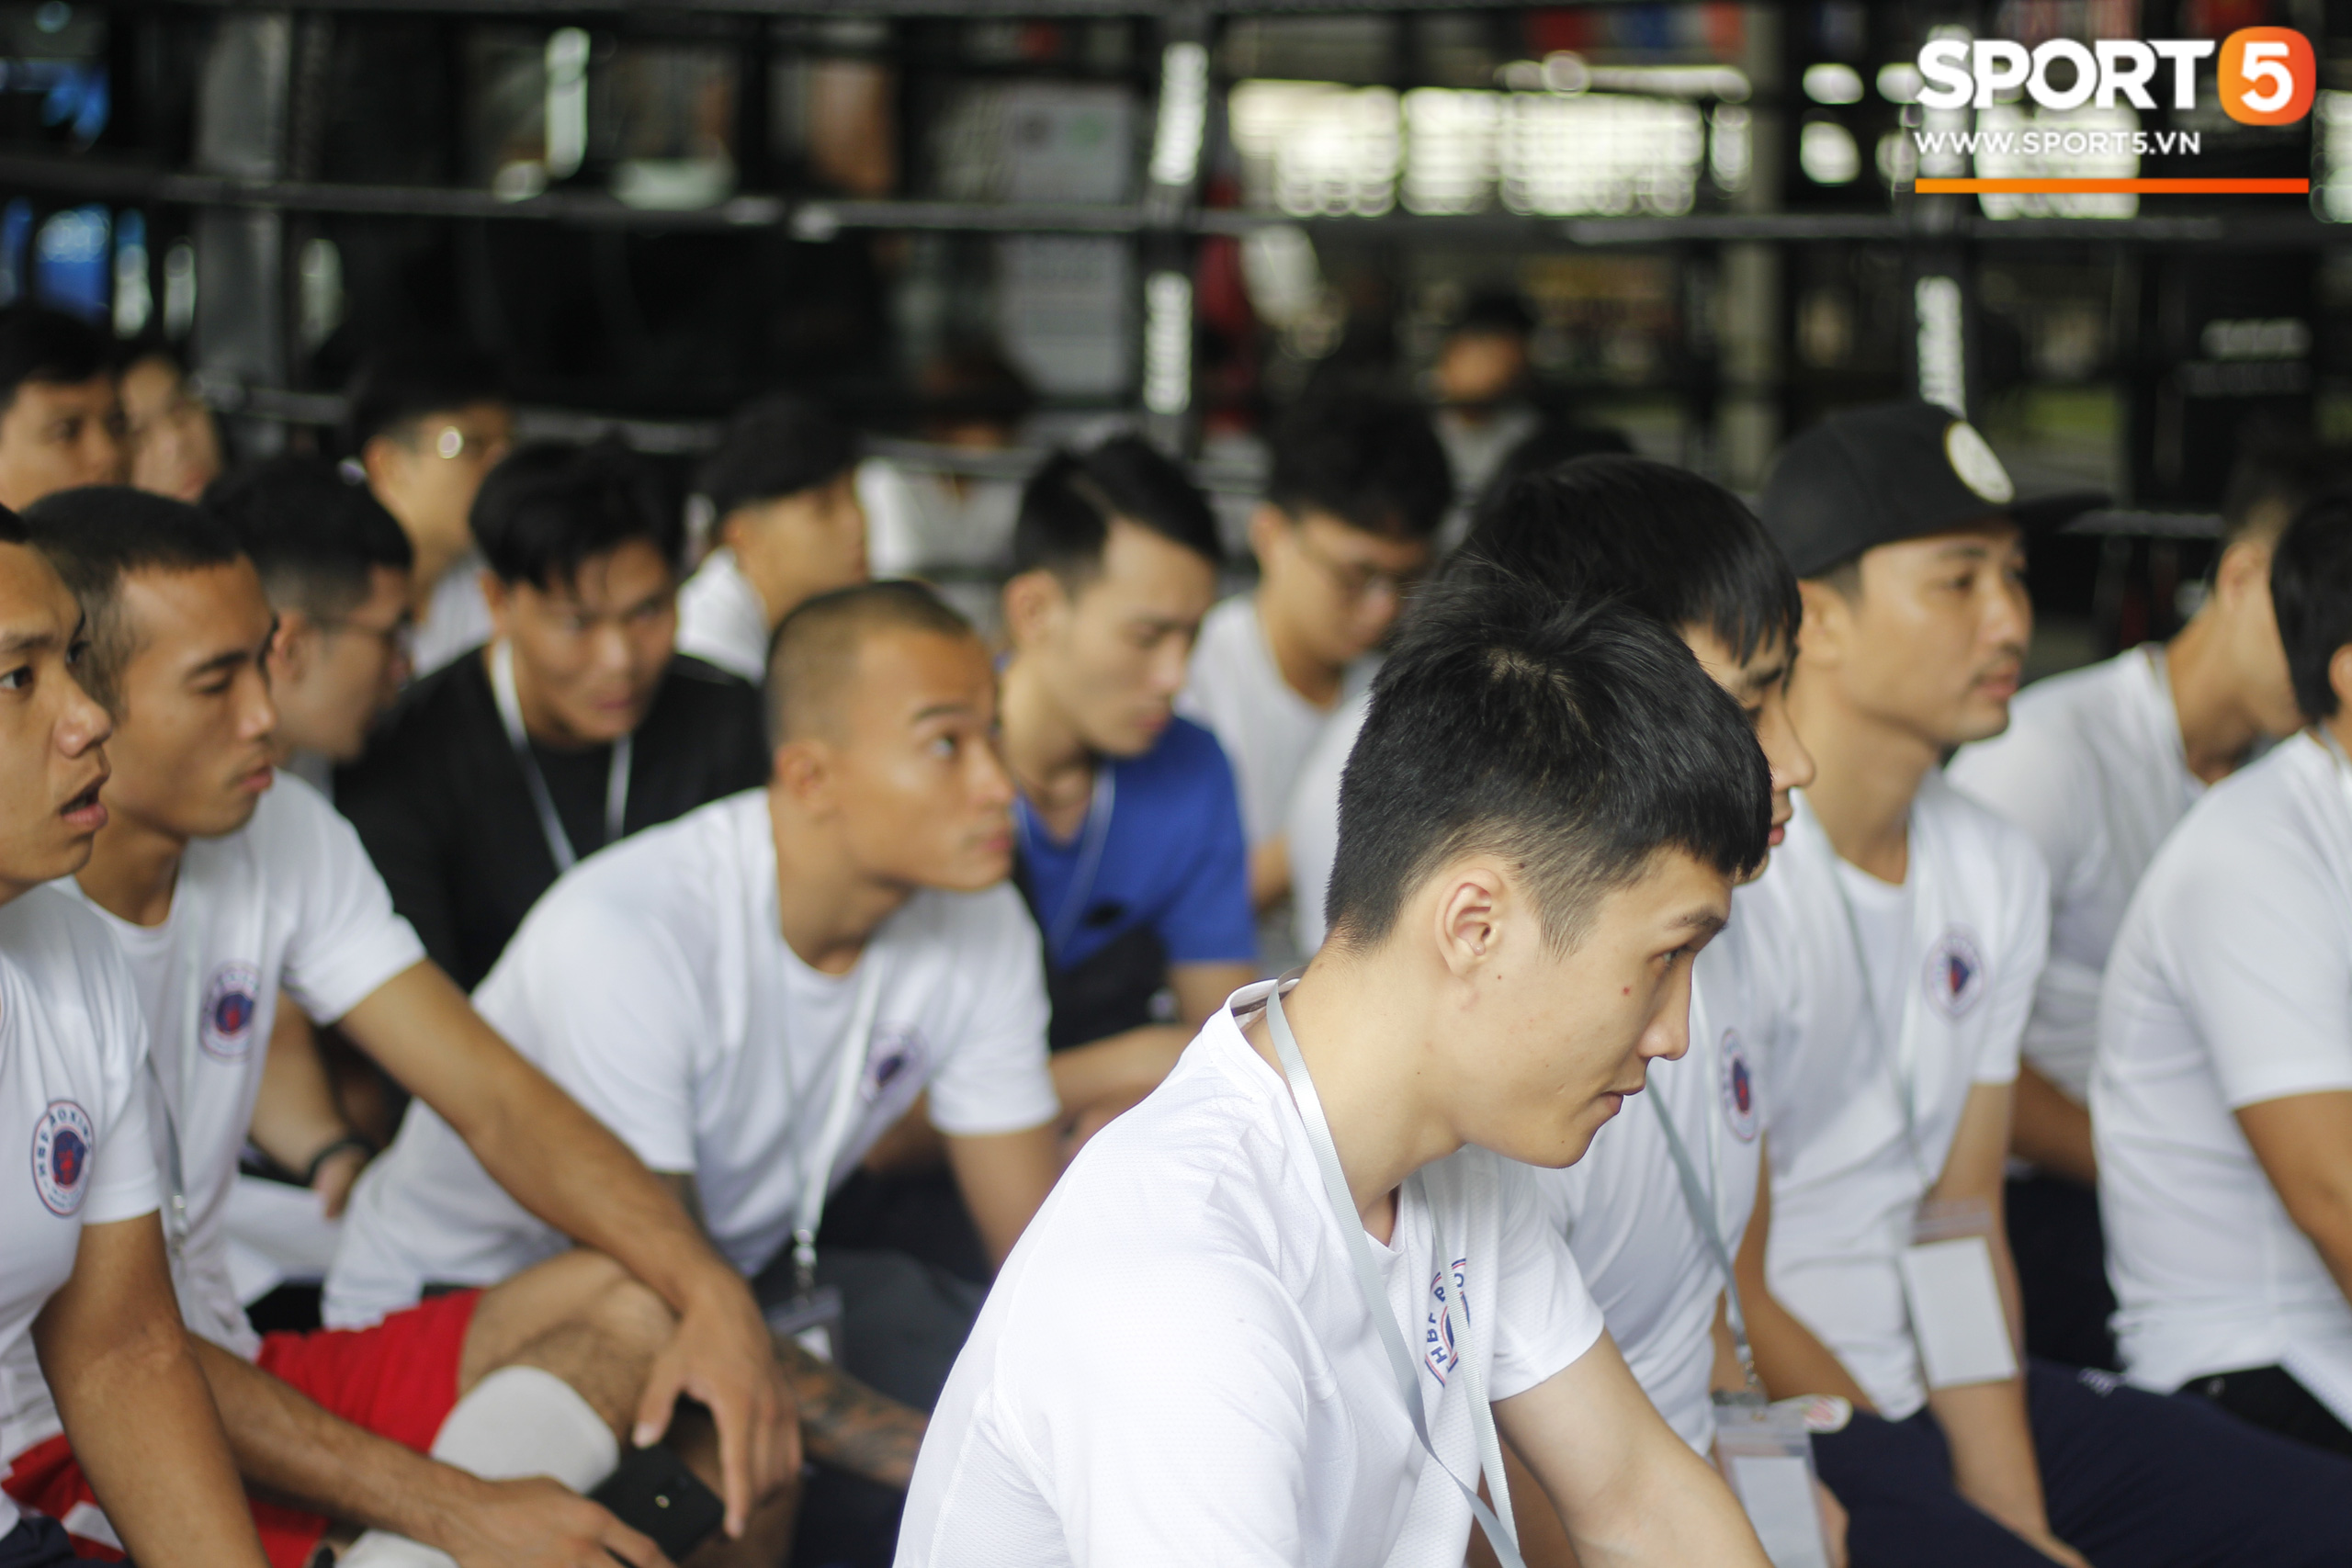 Toàn cảnh khóa tập huấn HLV Boxing phong trào của Liên đoàn Boxing TP.HCM - Ảnh 11.